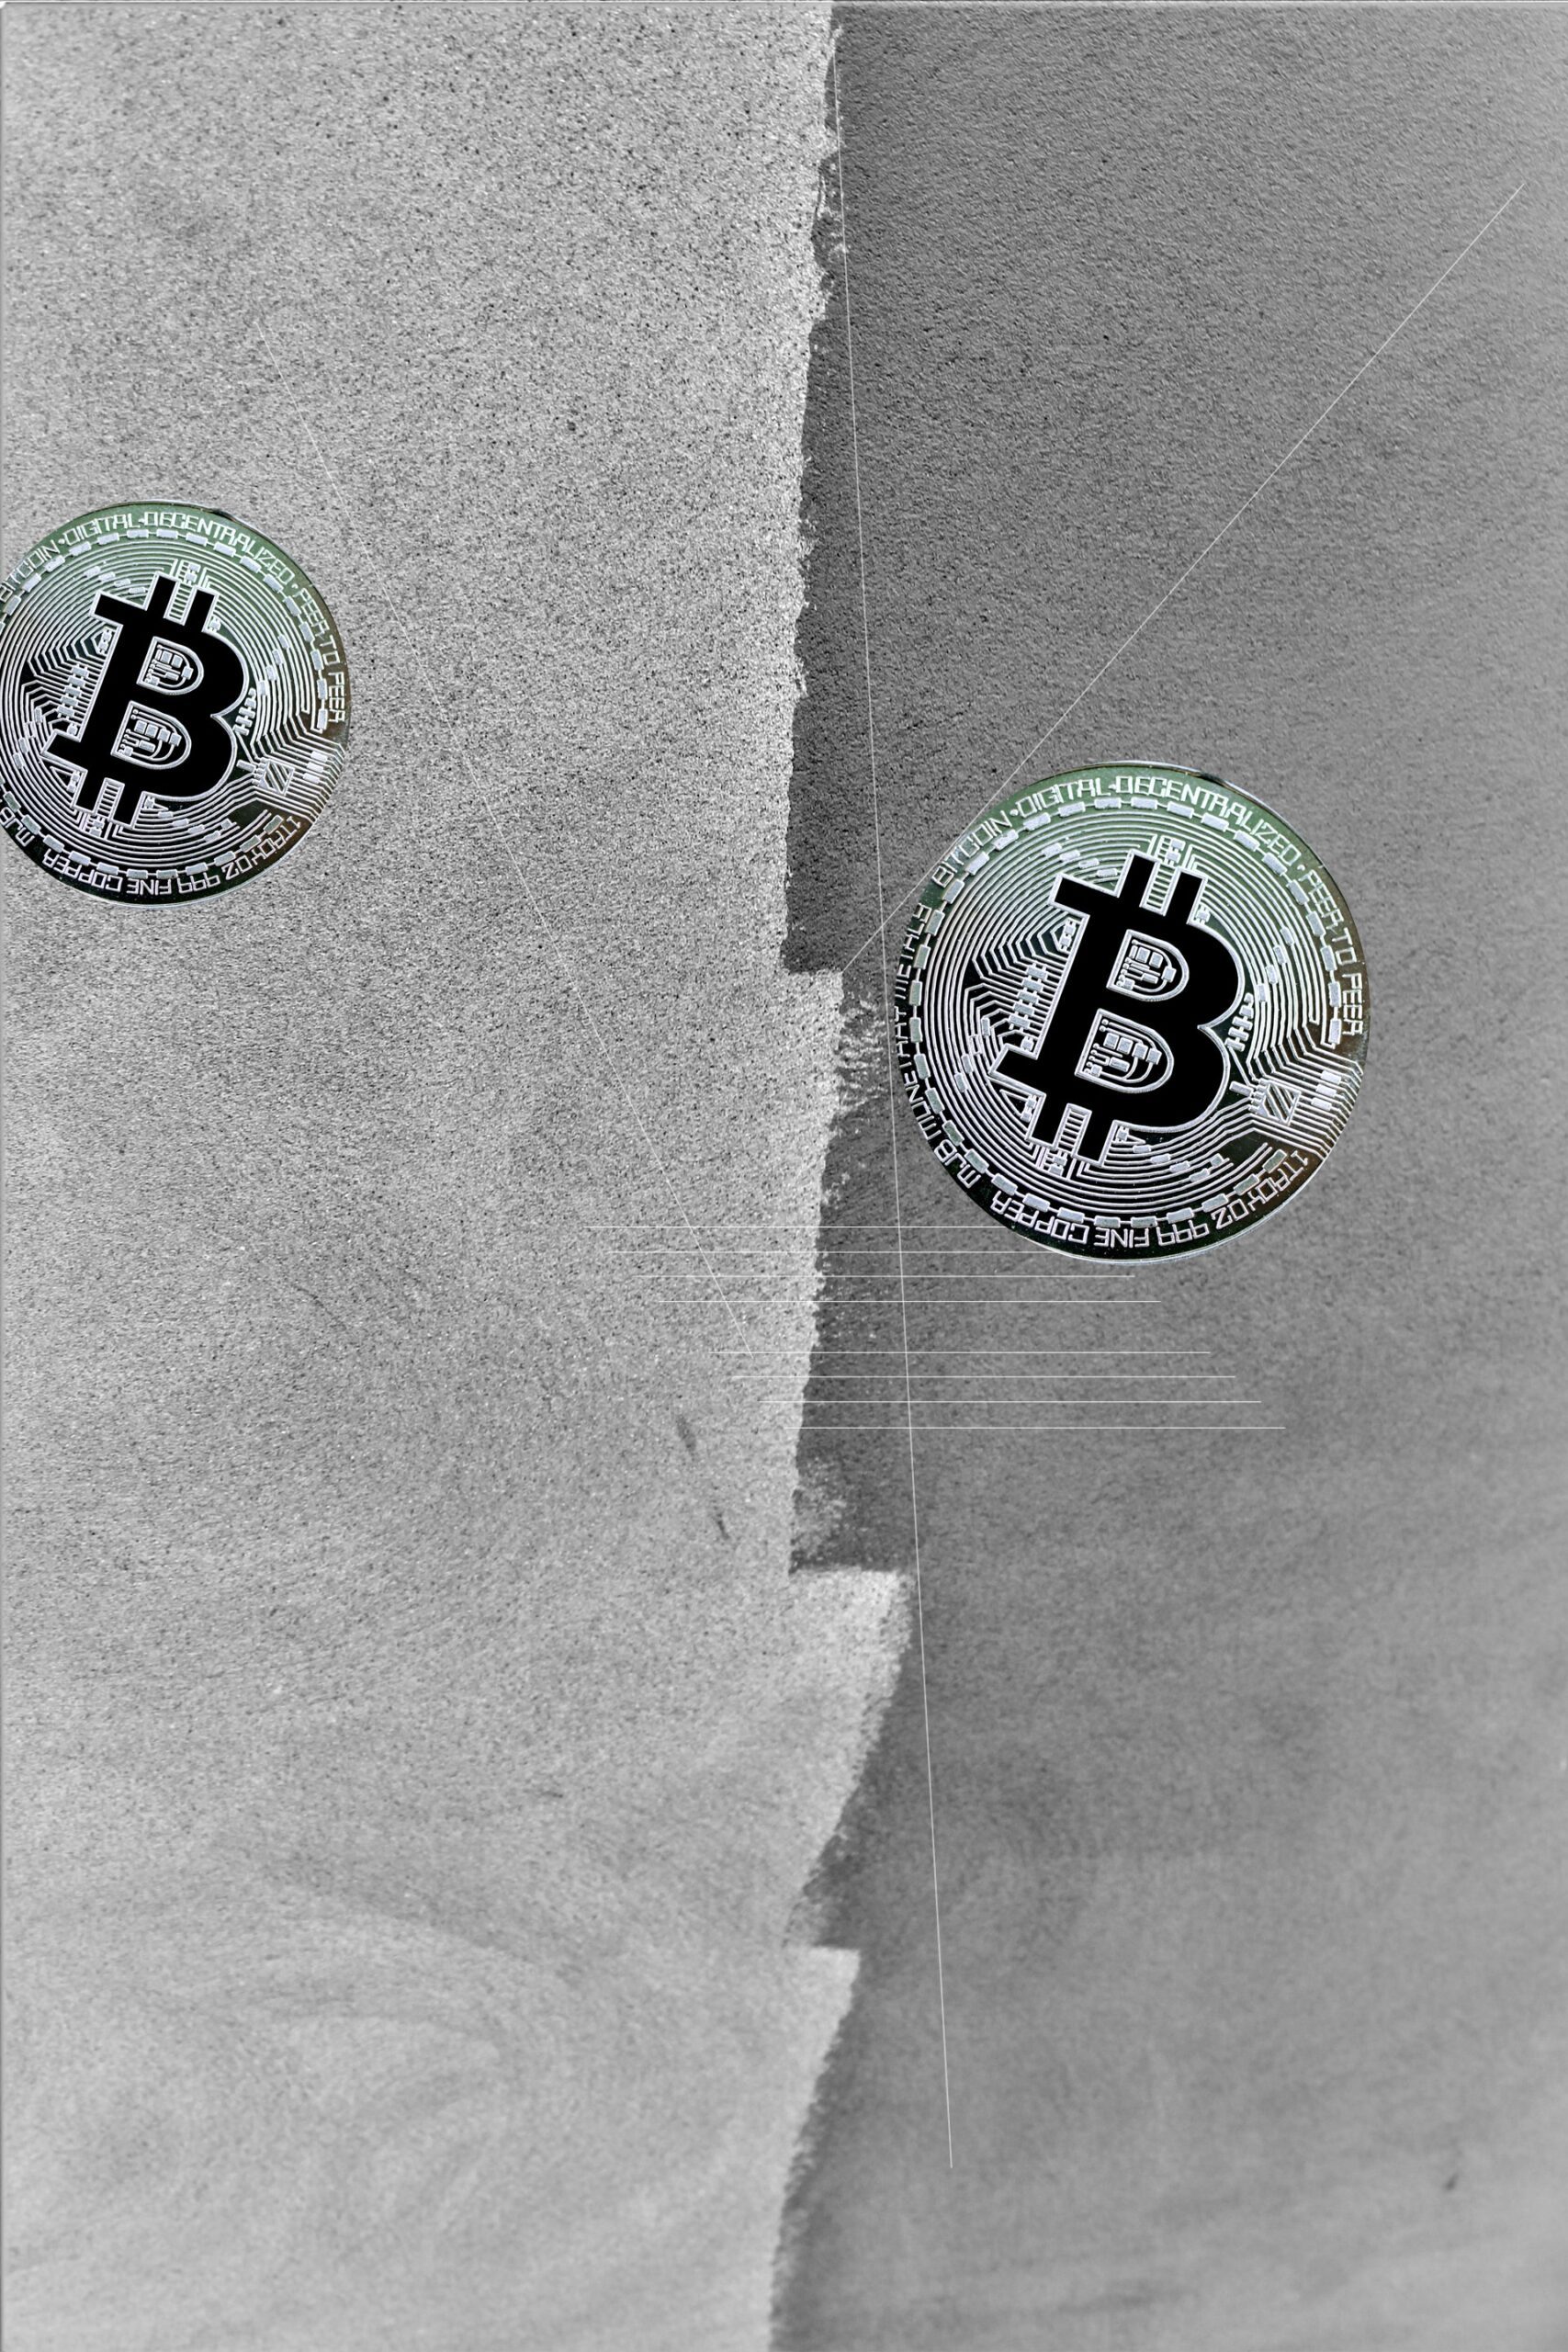 Cosa sono gli ordinals bitcoin?